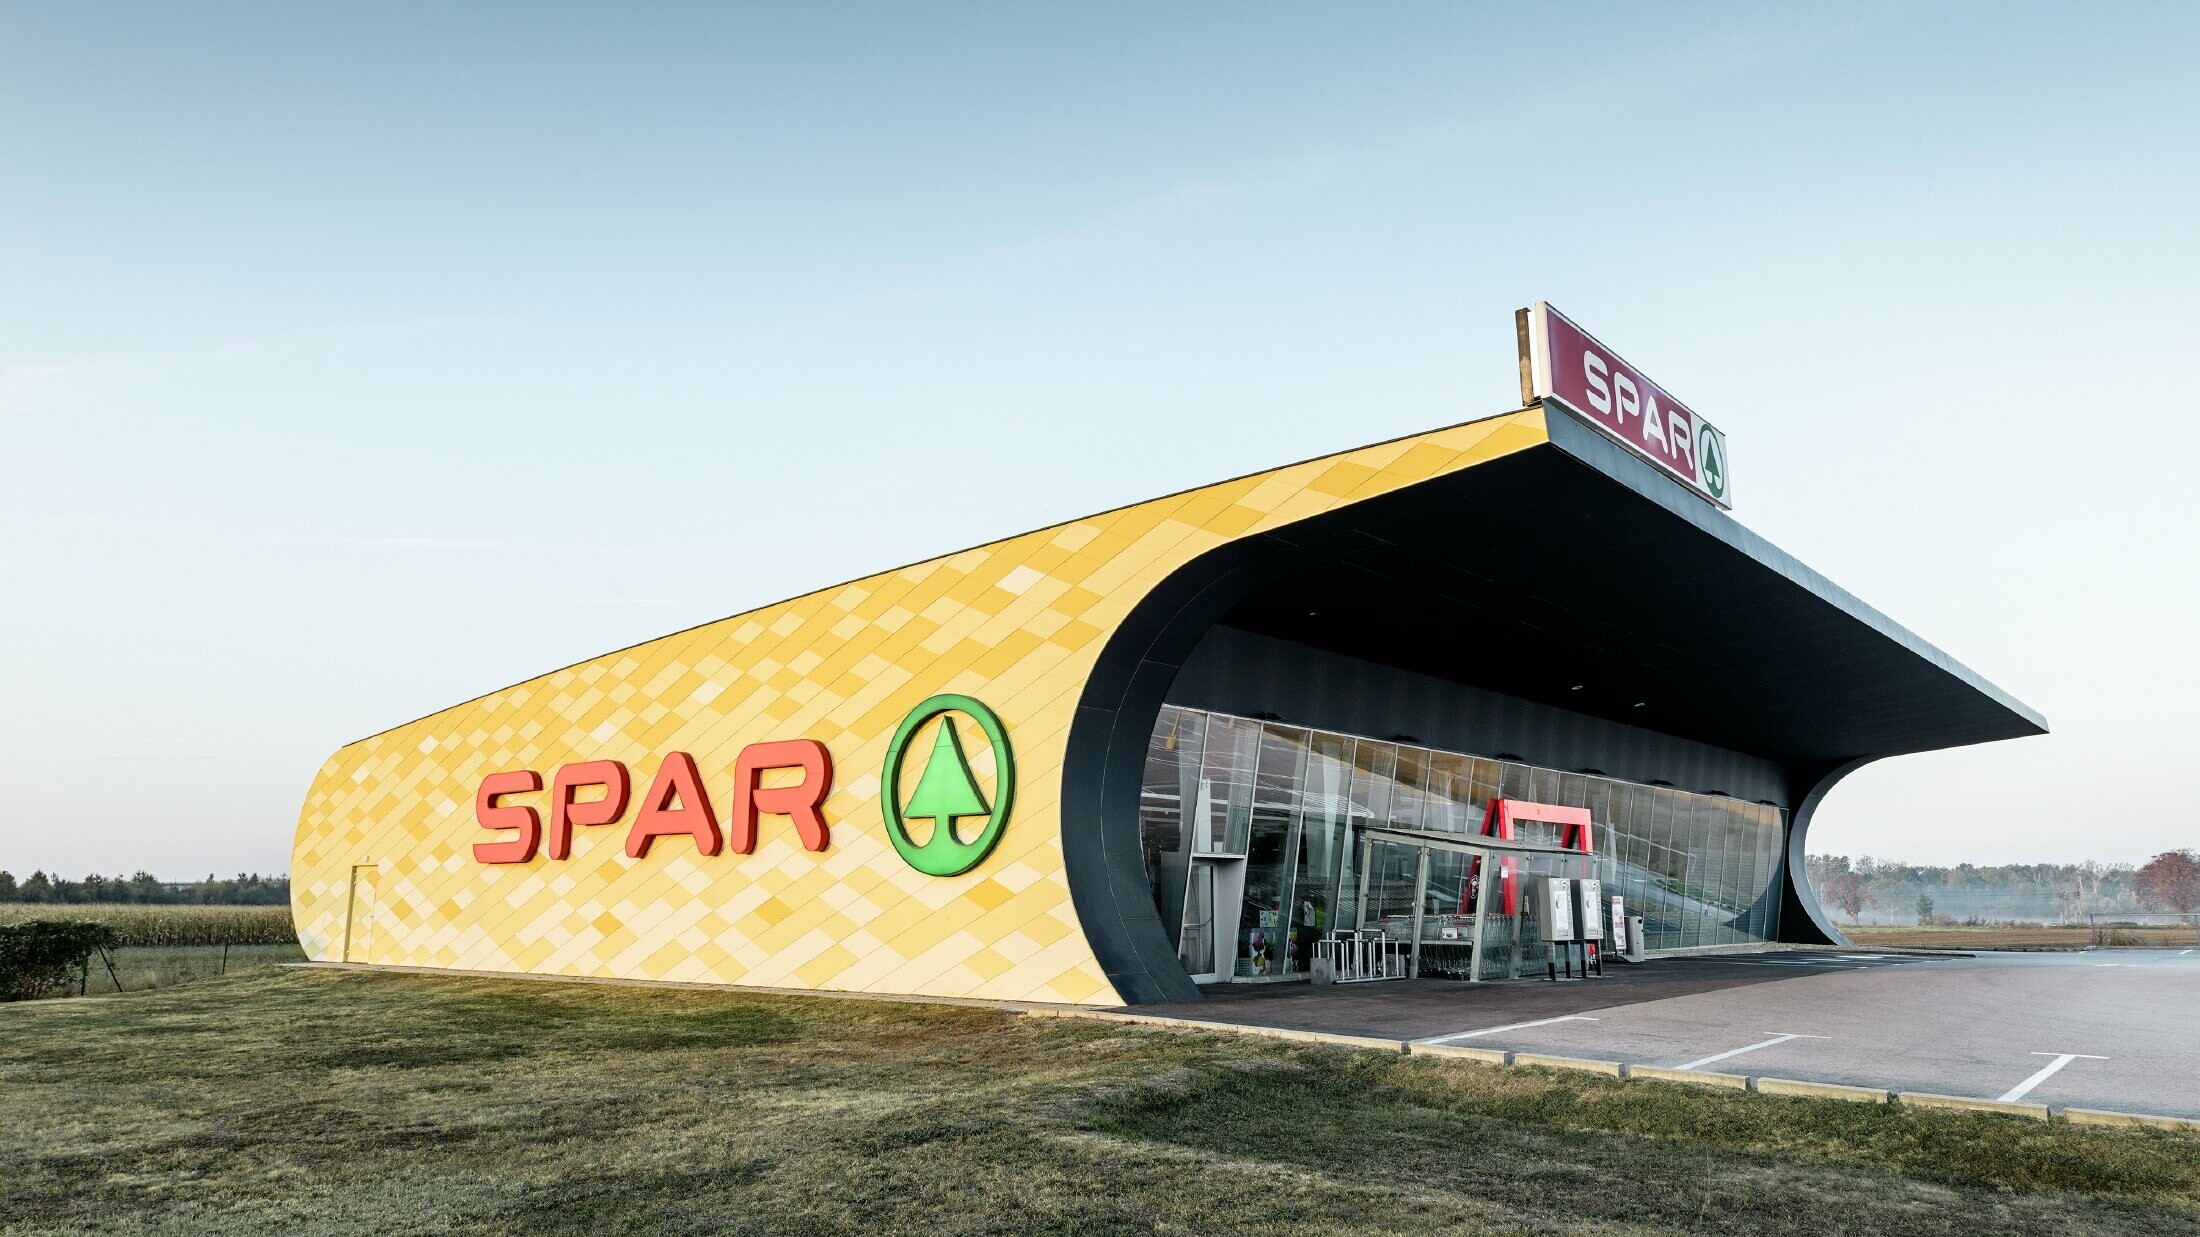 Podružnica Spar z aluminijasto fasado v rumeno-oranžnem karo vzorcu in logotipom Spar